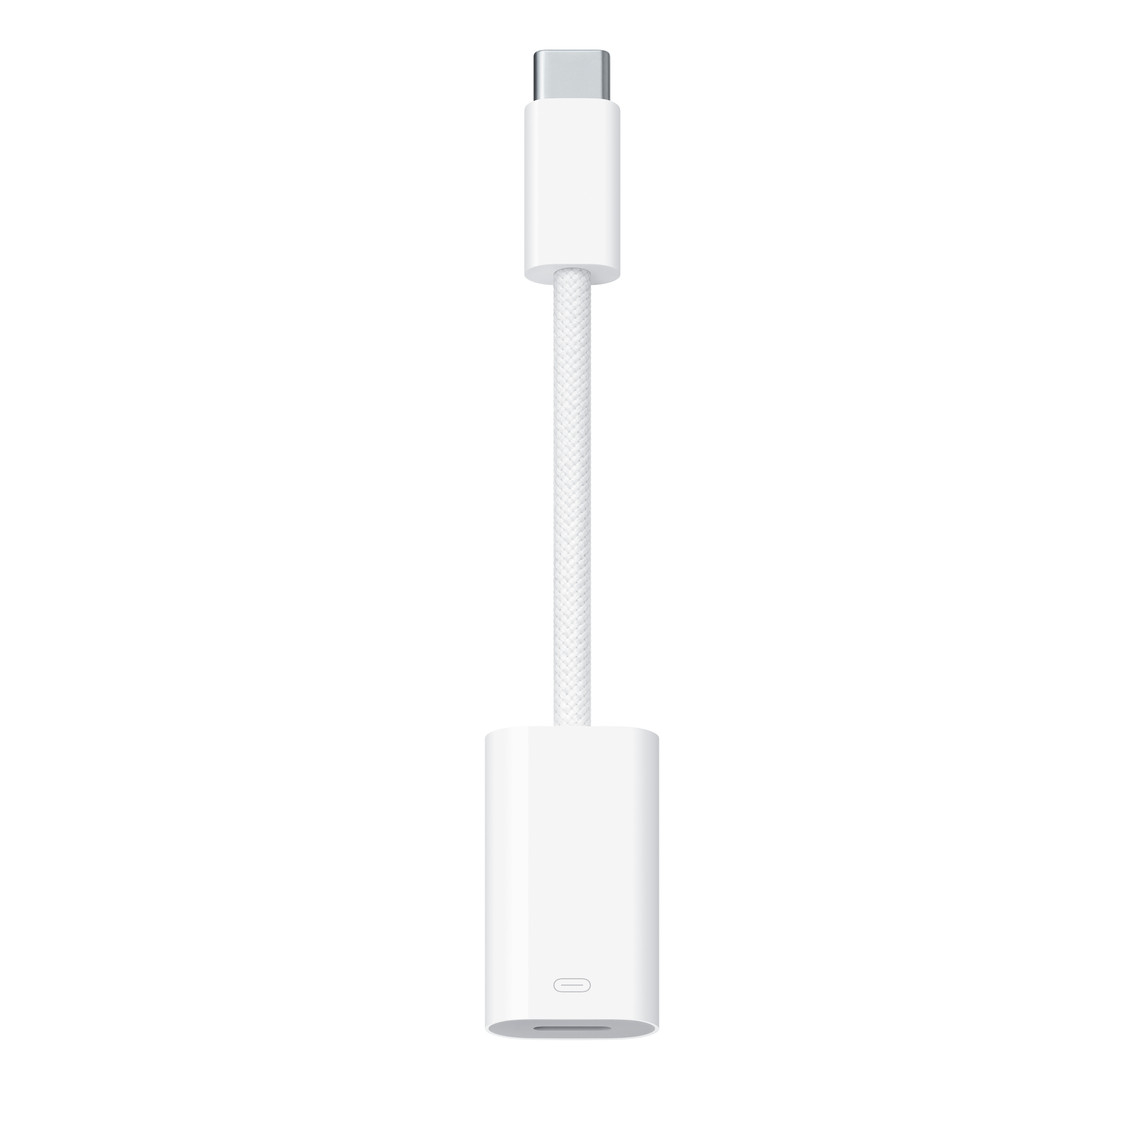 Адаптер Apple USB-C to Lightning MUQX3FE/A адаптер lightning usb для iphone и ipad lightning to usb camera adapter